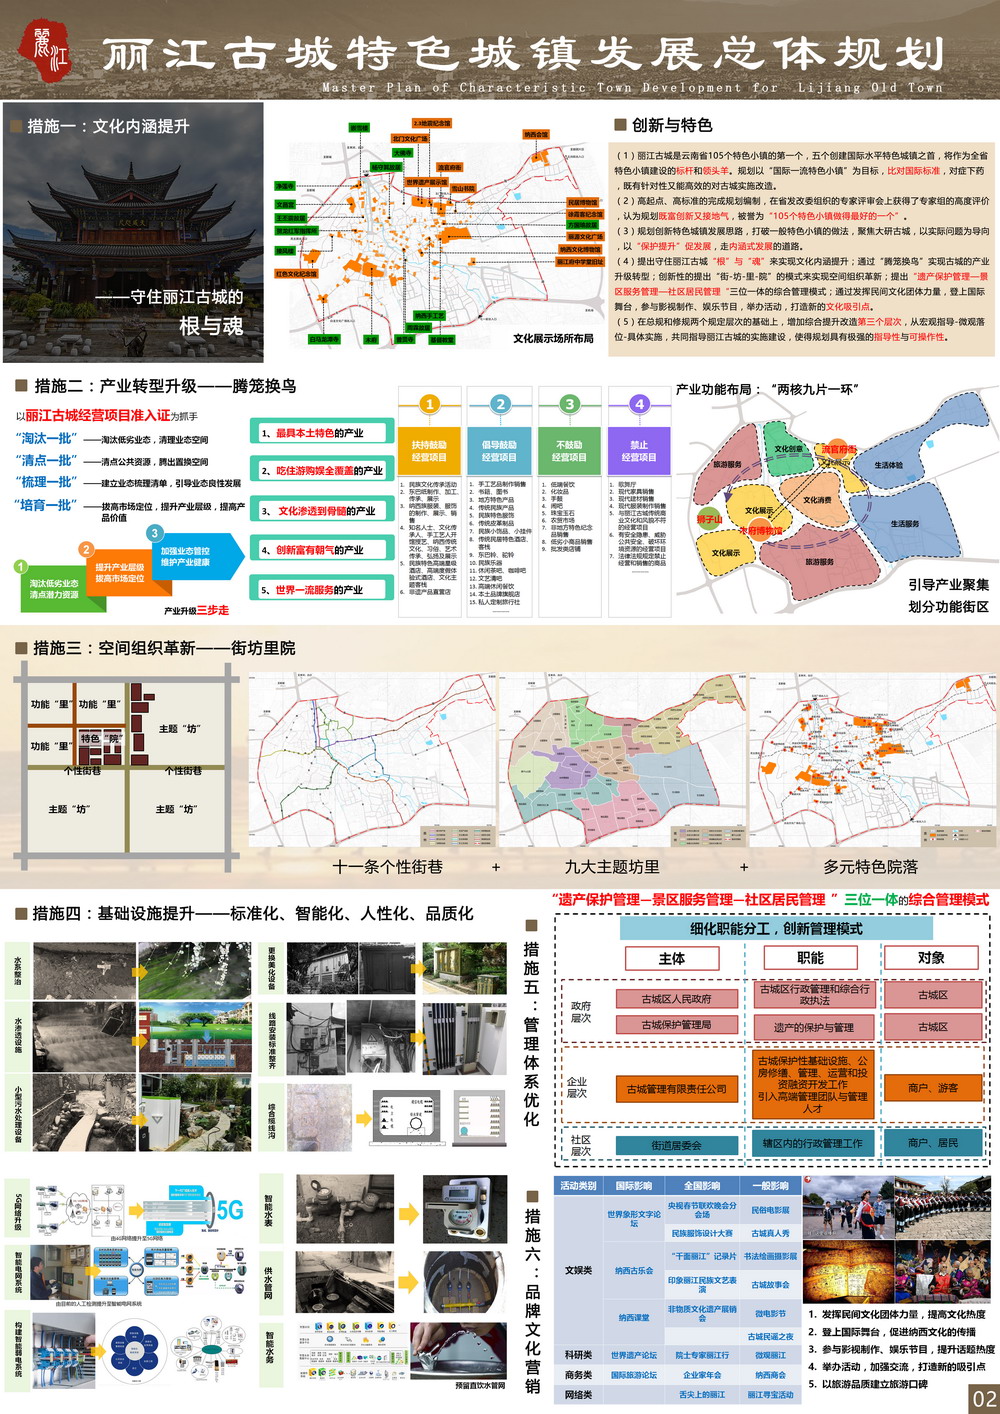 丽江古城特色城镇发展总体规划---展板21111.jpg